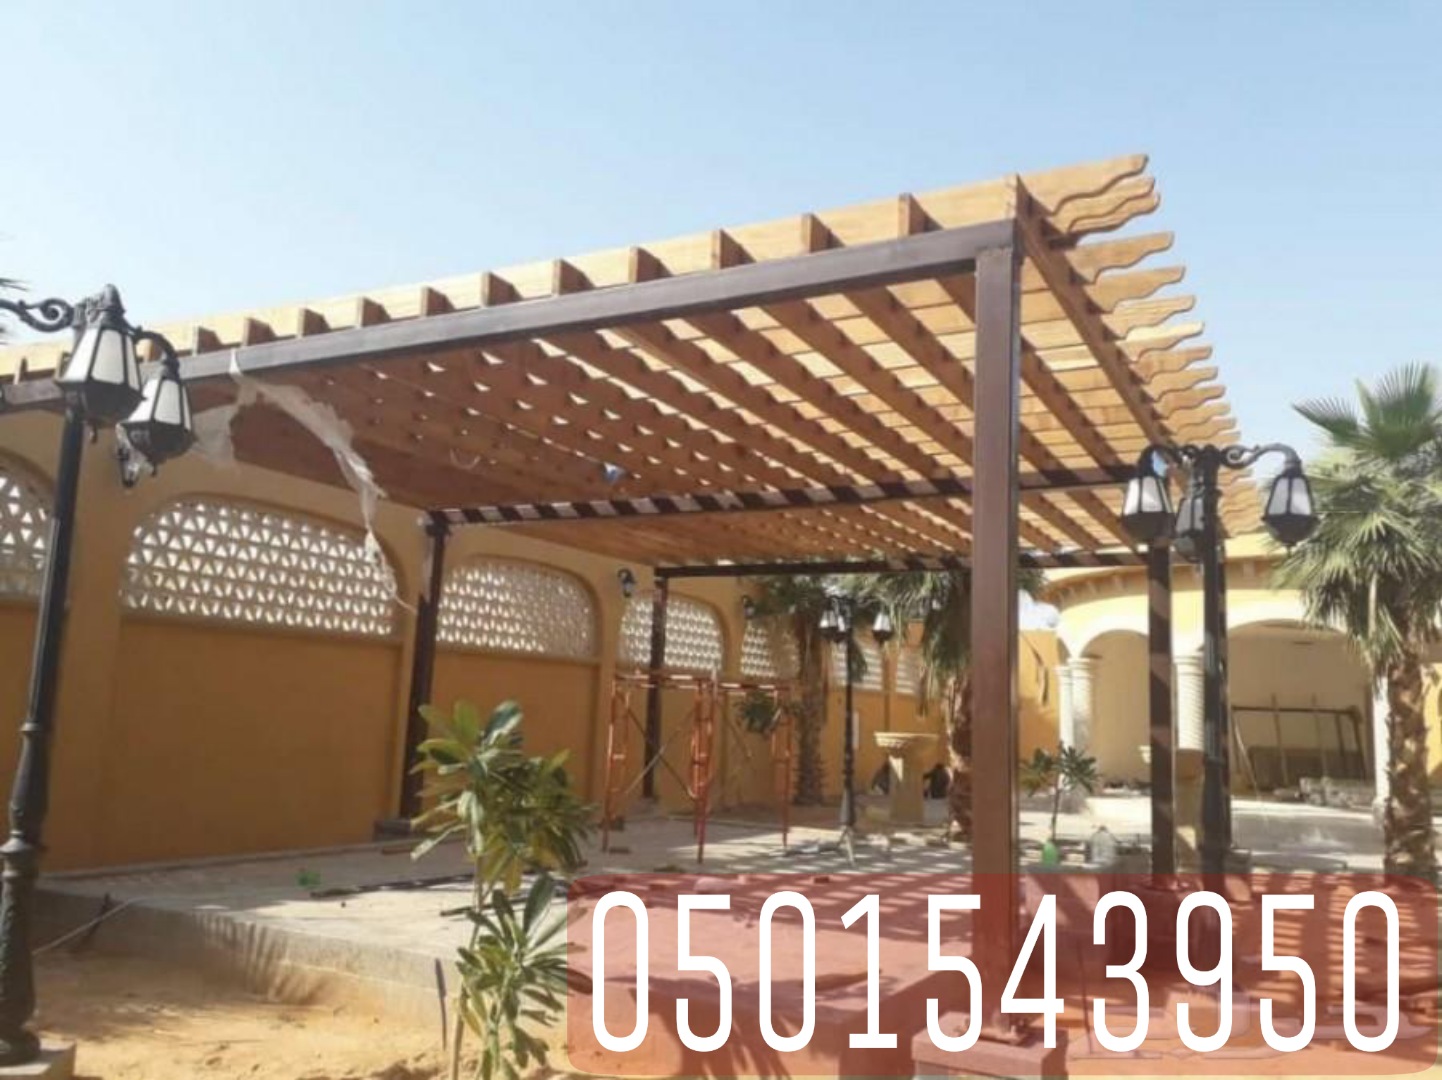 برجولات جلسات خشبية في جدة , 0501543950 P_2151u1m2v9